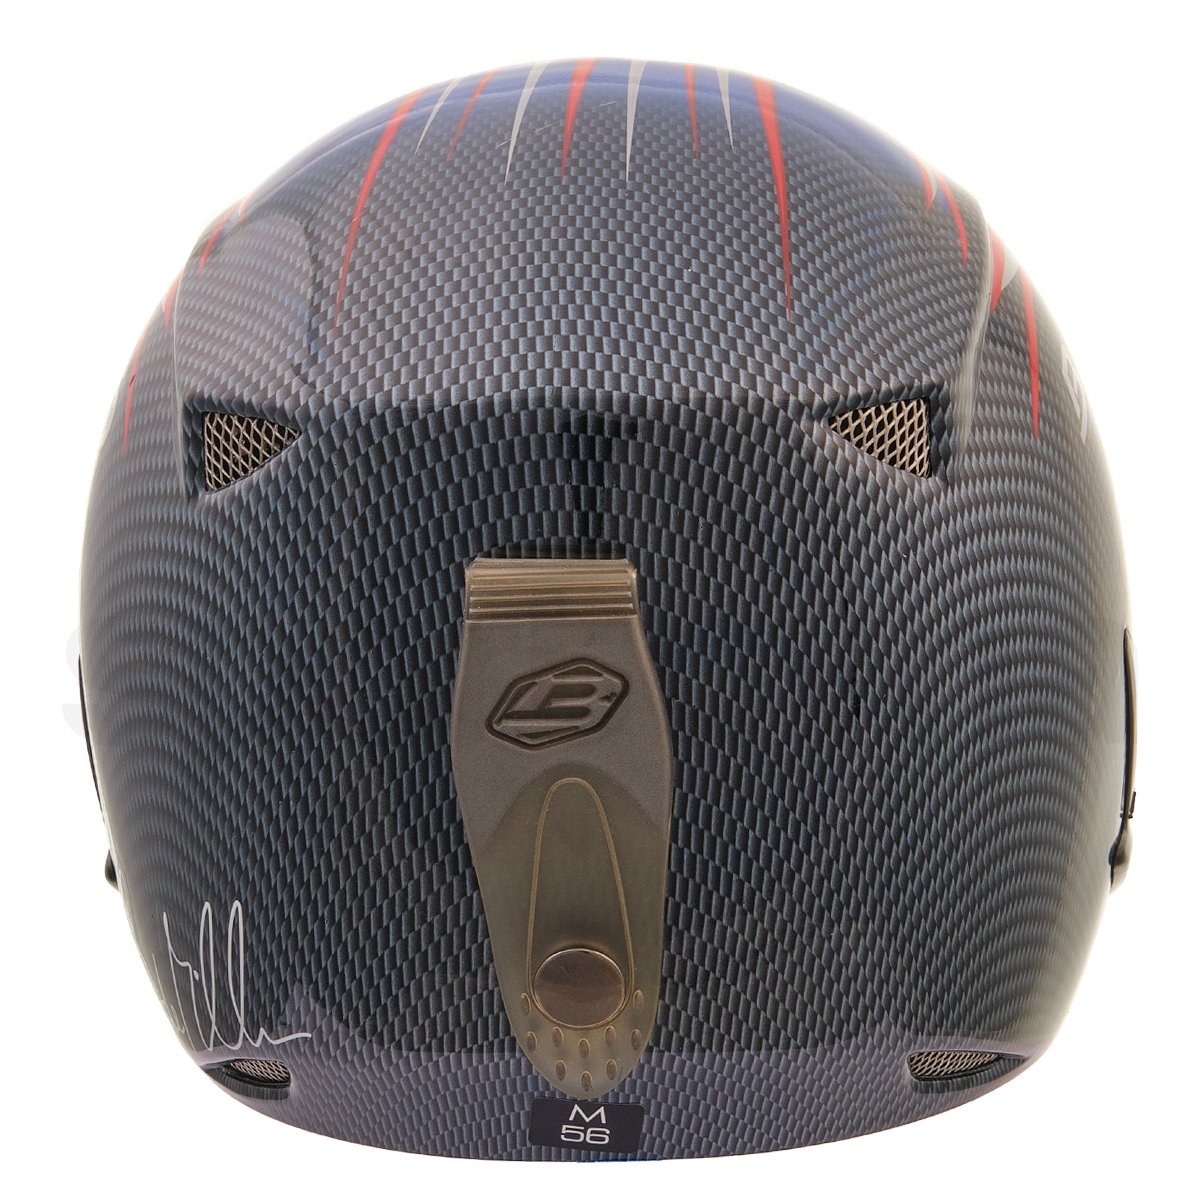 Lyžařská helma Briko Stratos Jr - černá/červená